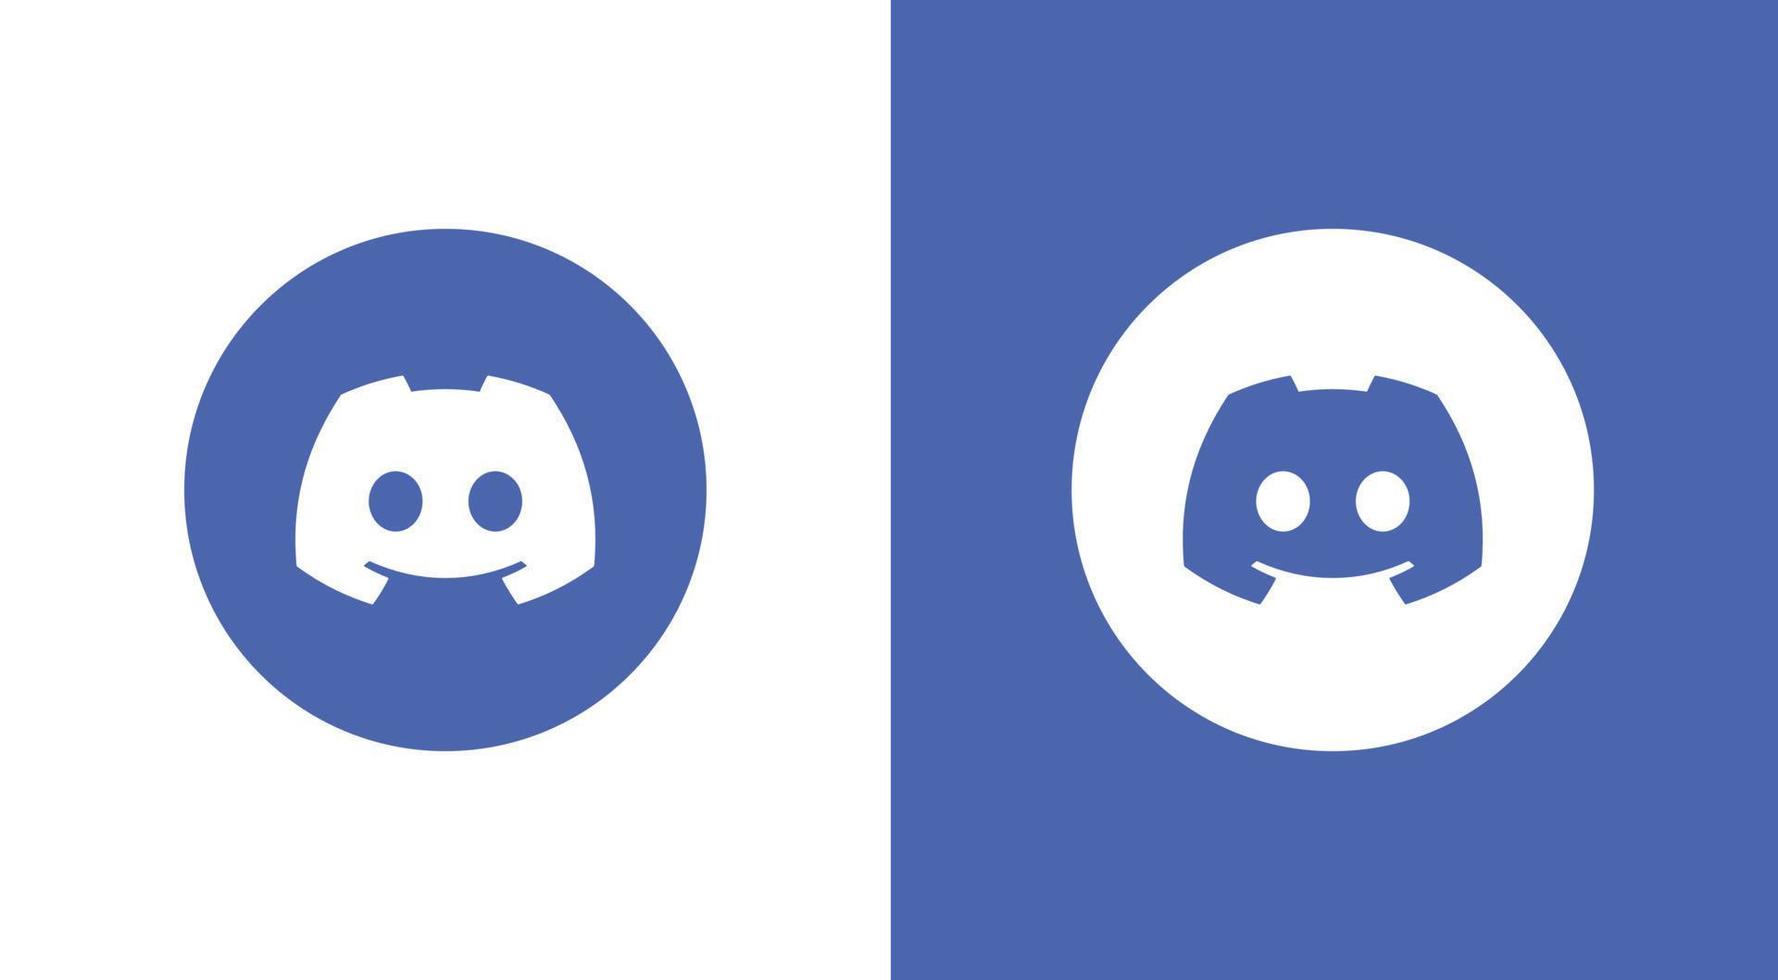 Discord social media logo icon vector